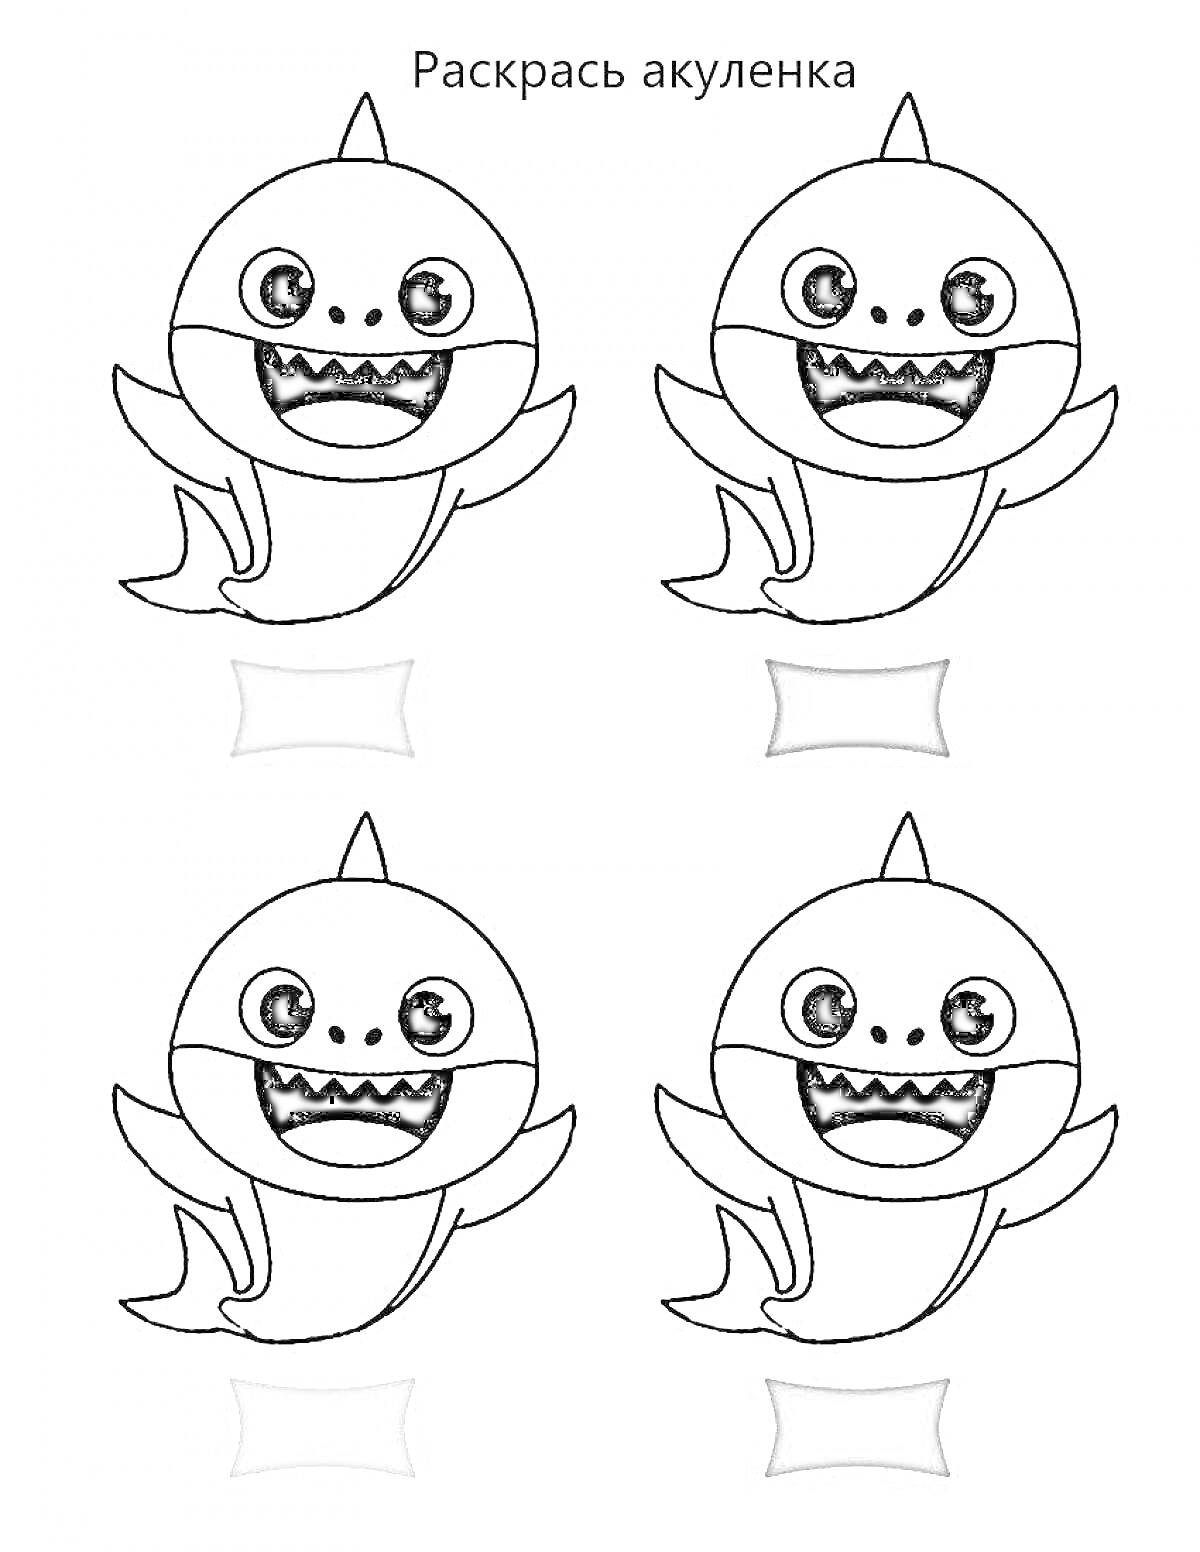 Раскраска Раскраска с четырьмя изображениями акулёнка с разными выражениями лиц